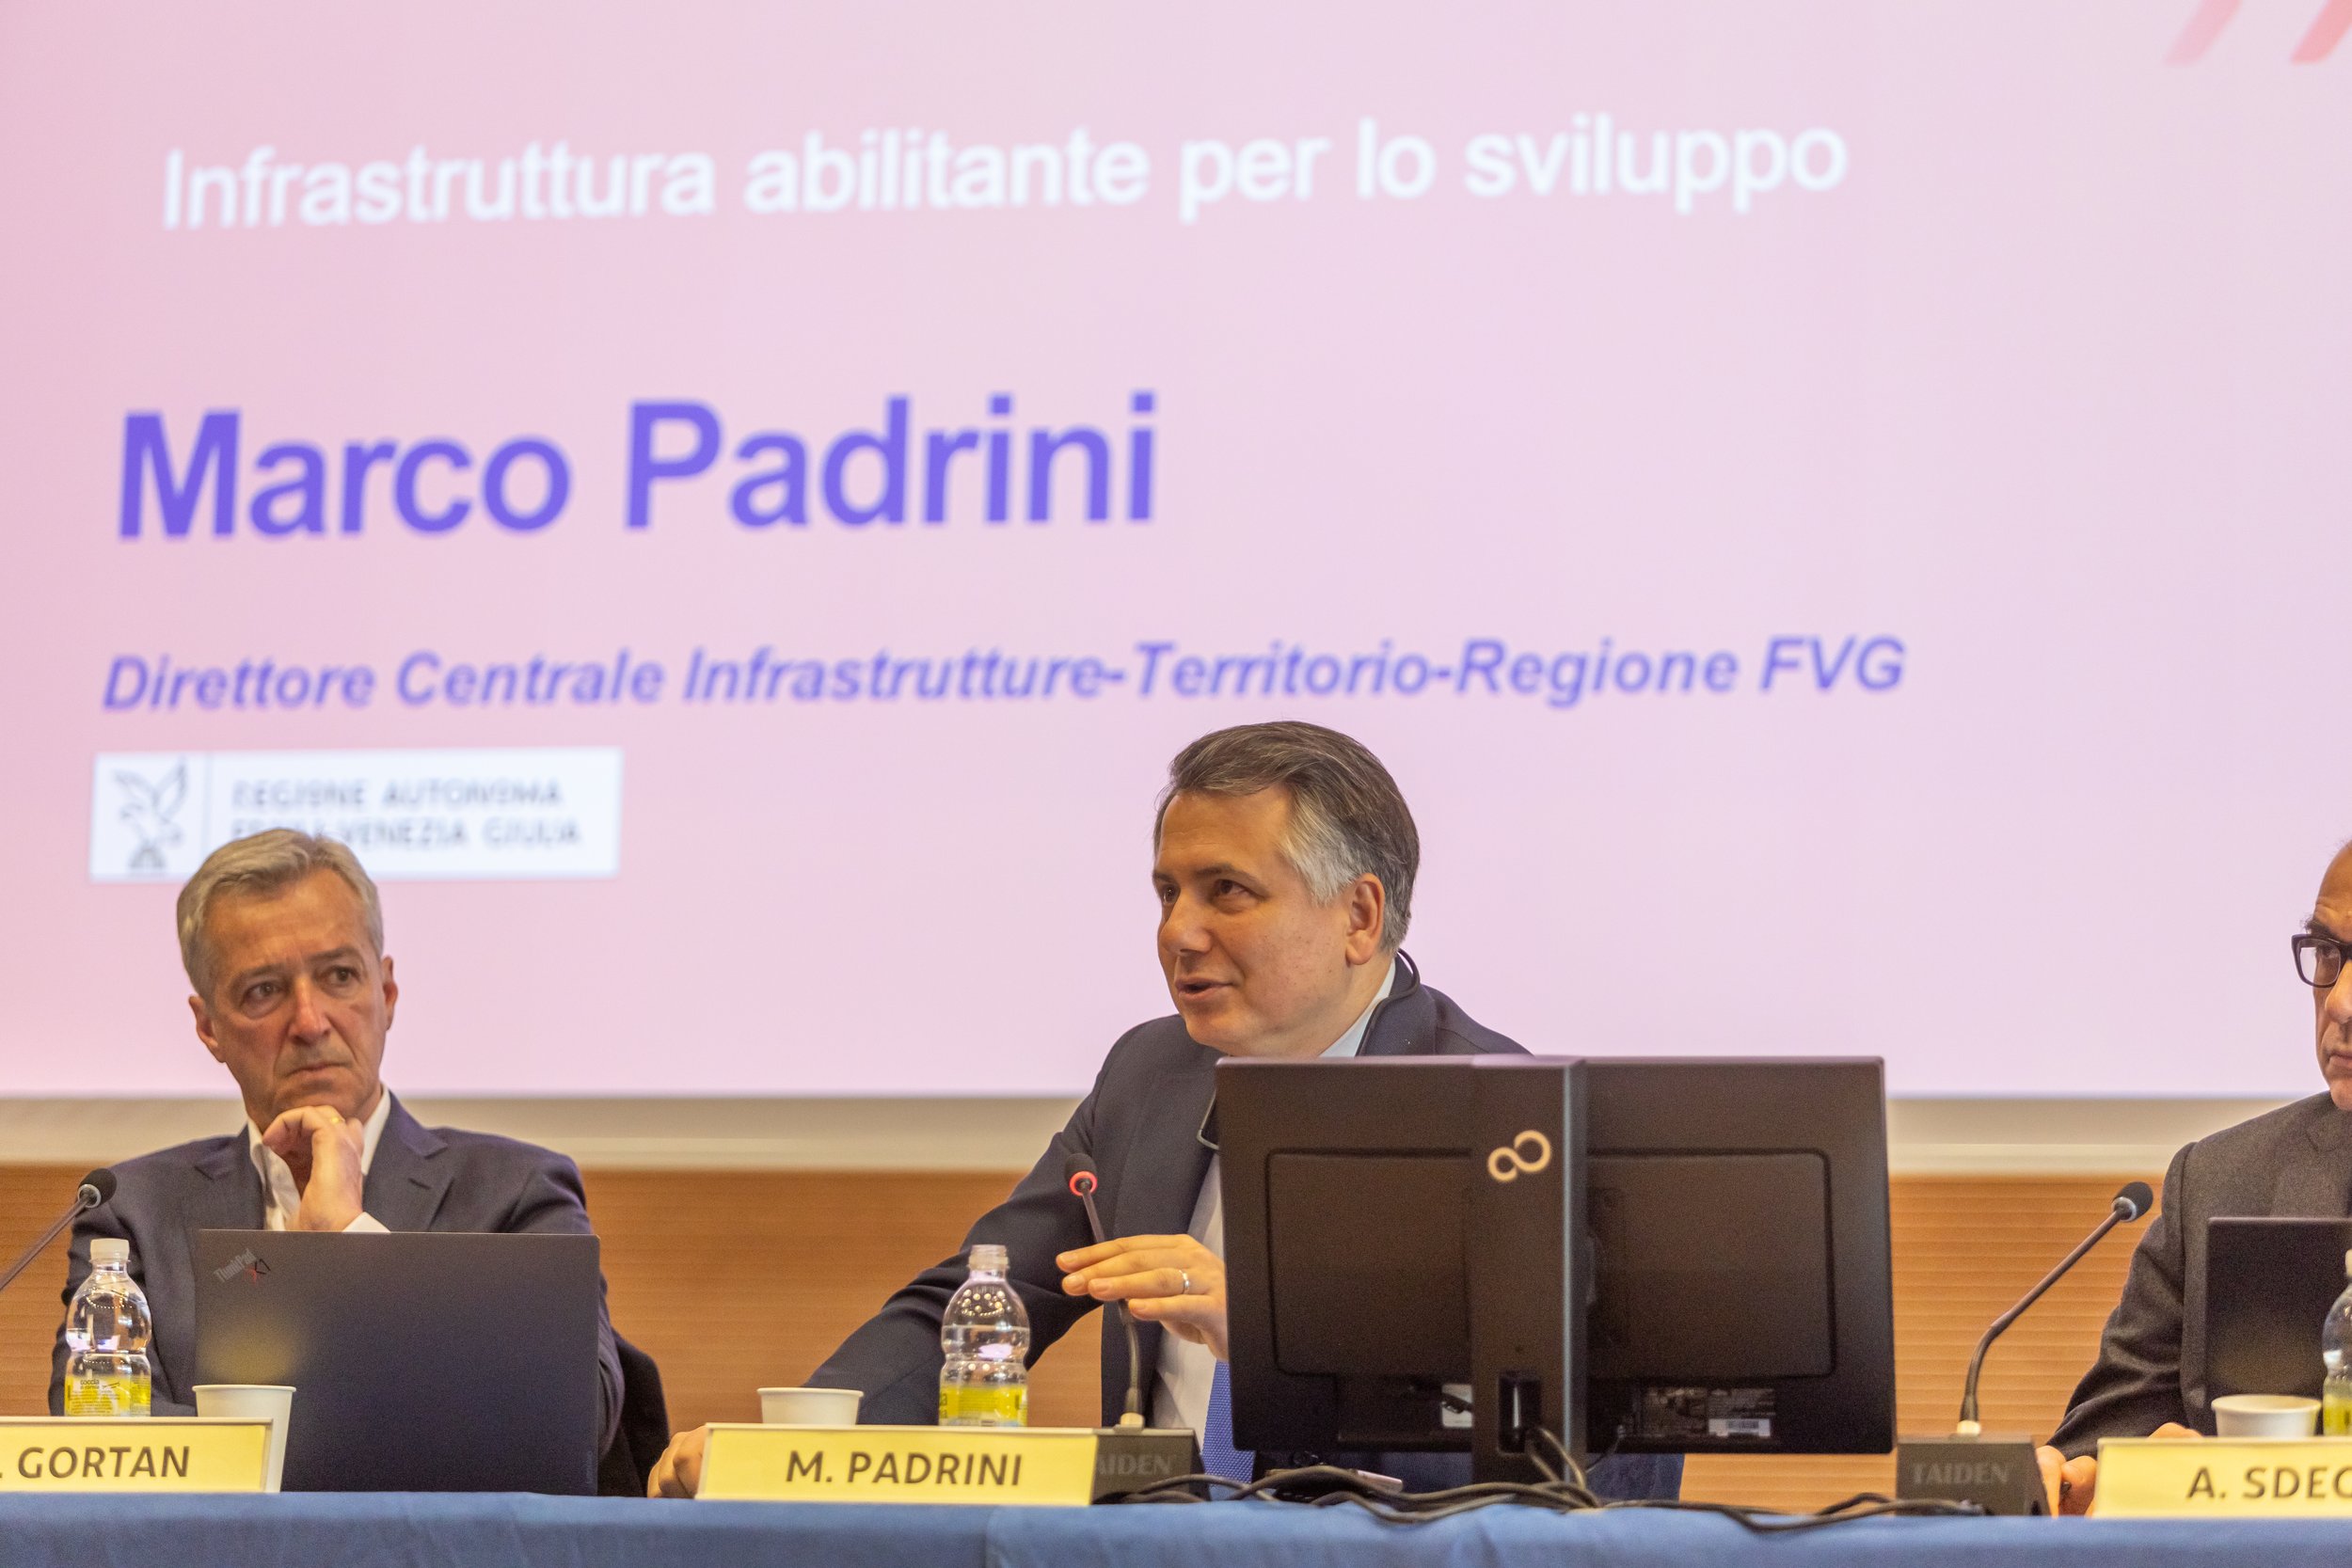  Seminario BIM@FVG | Marco Padrini, Direttore Centrale Infrastrutture e Territorio Regione FVG 